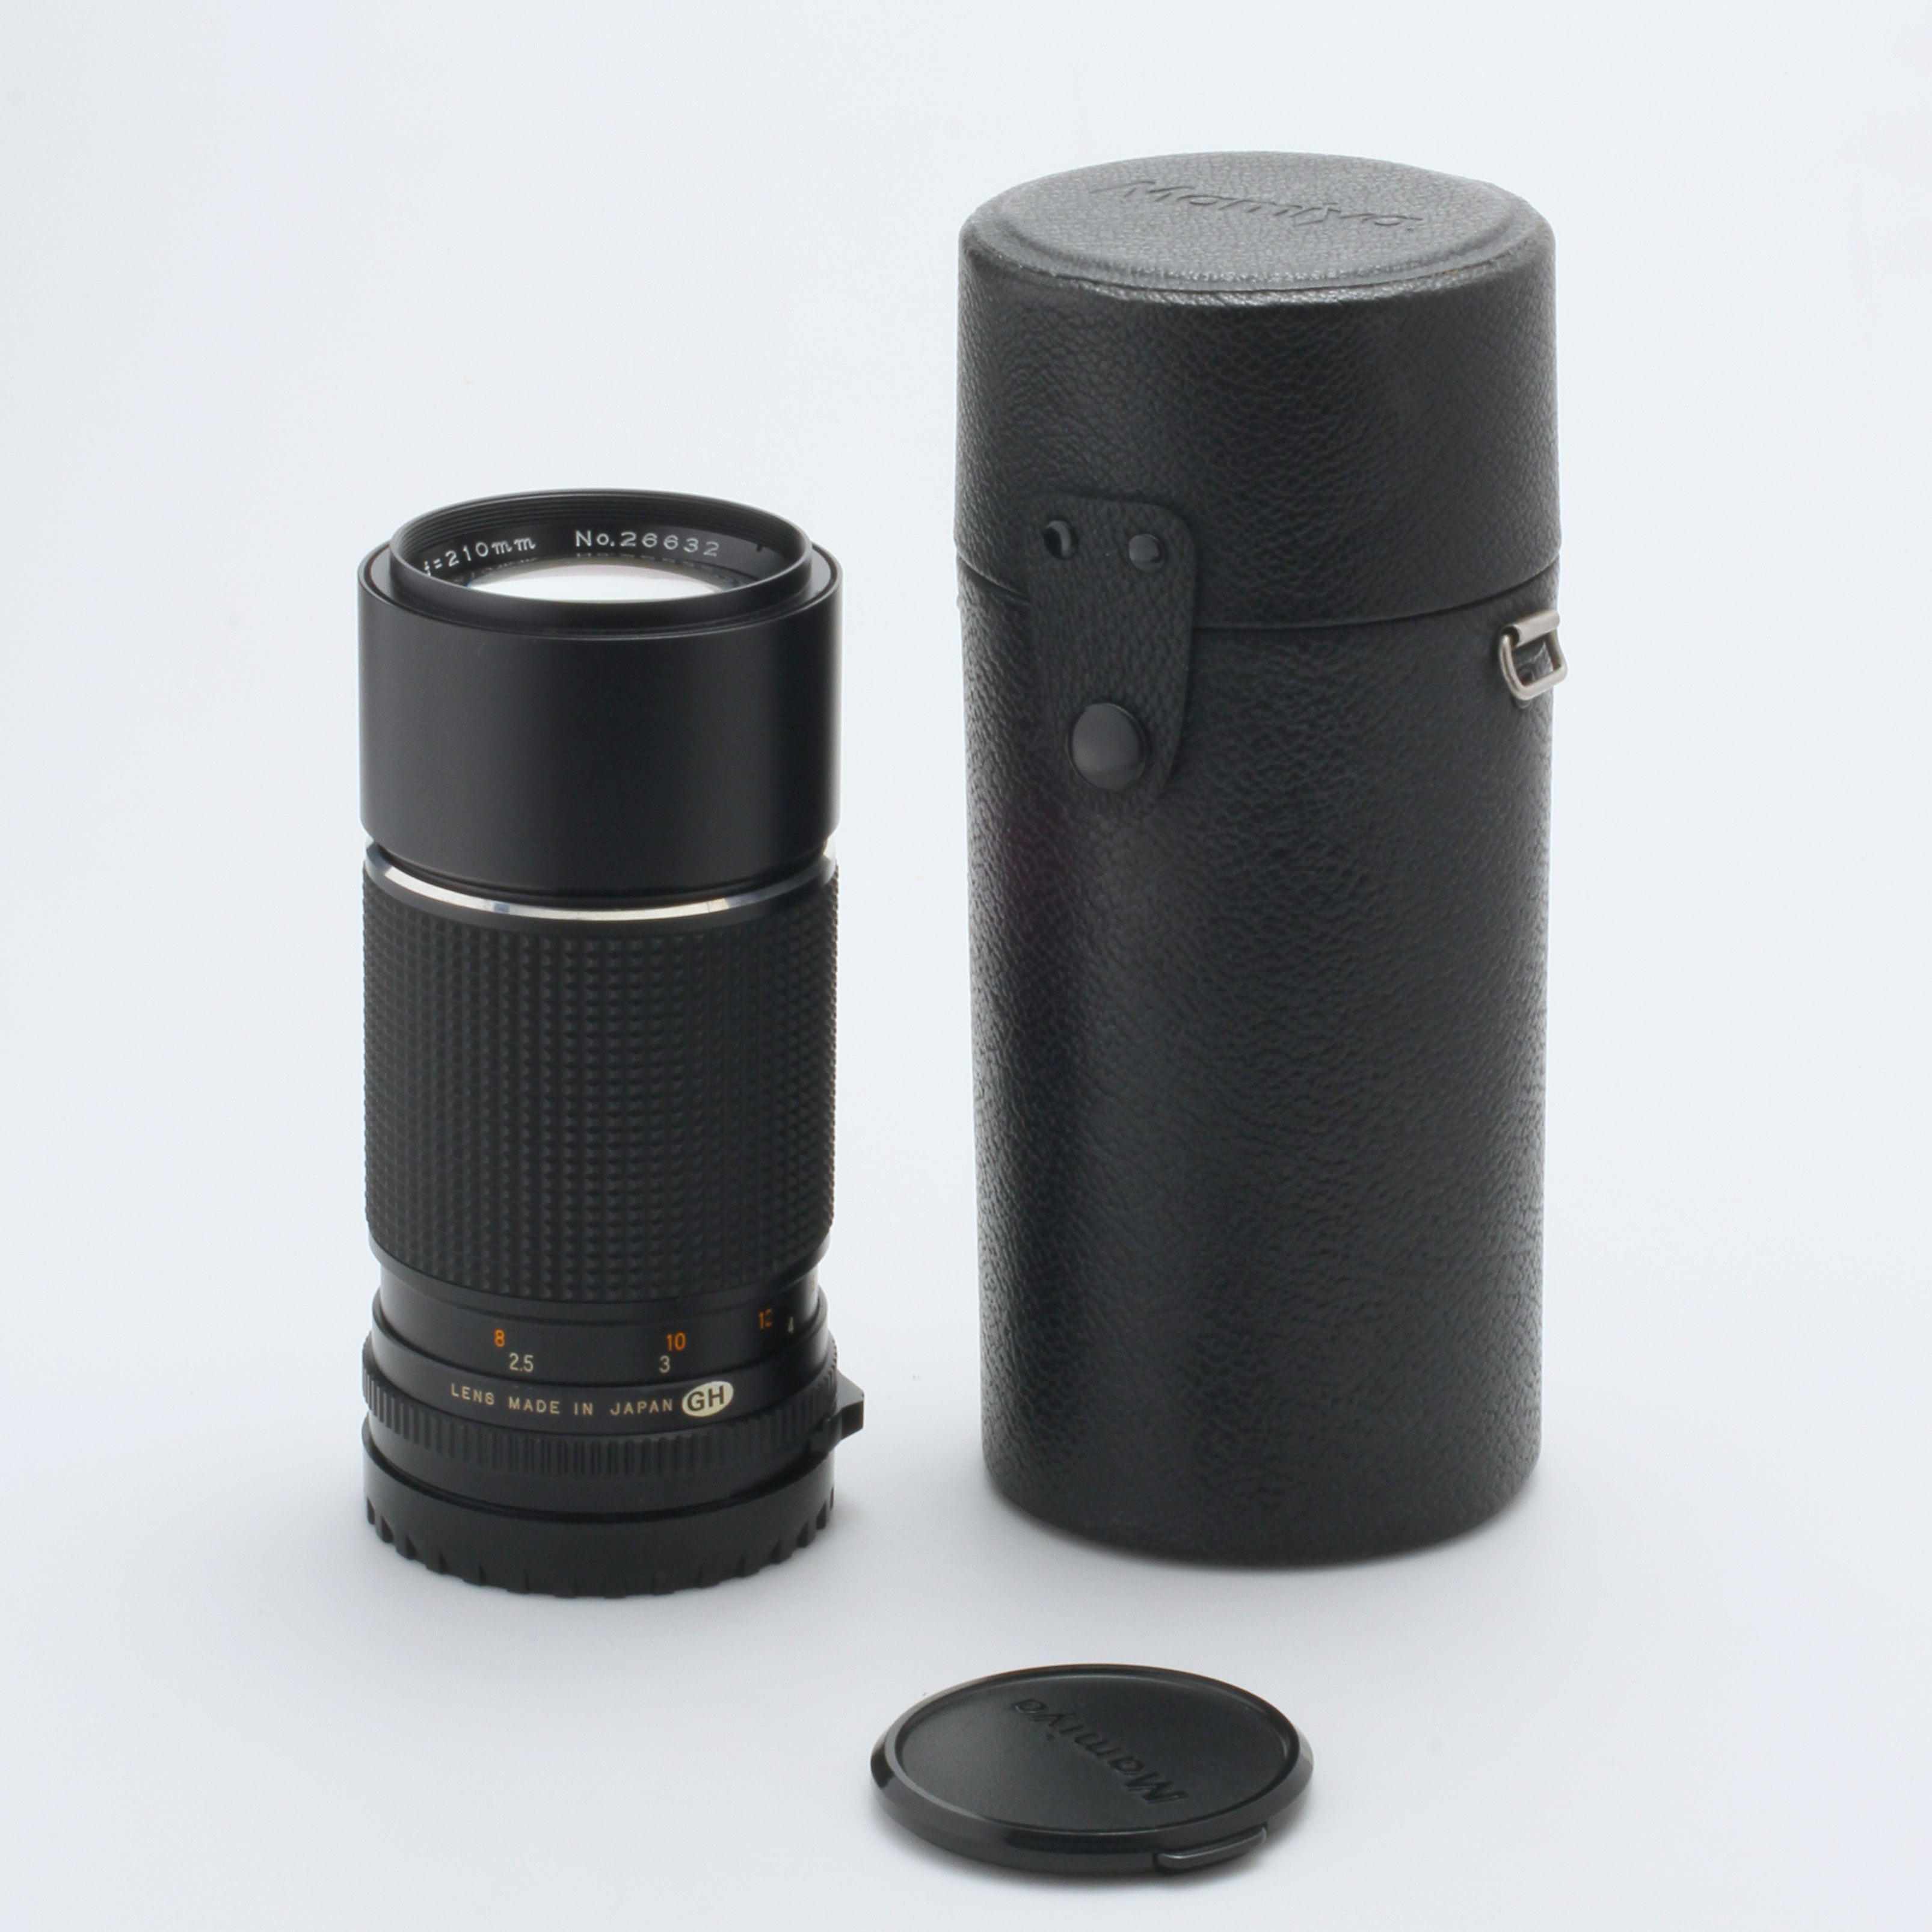 31.MINT Mamiya Sekor C 210mm f/4 Lens For Mamiya 645 made in Japan